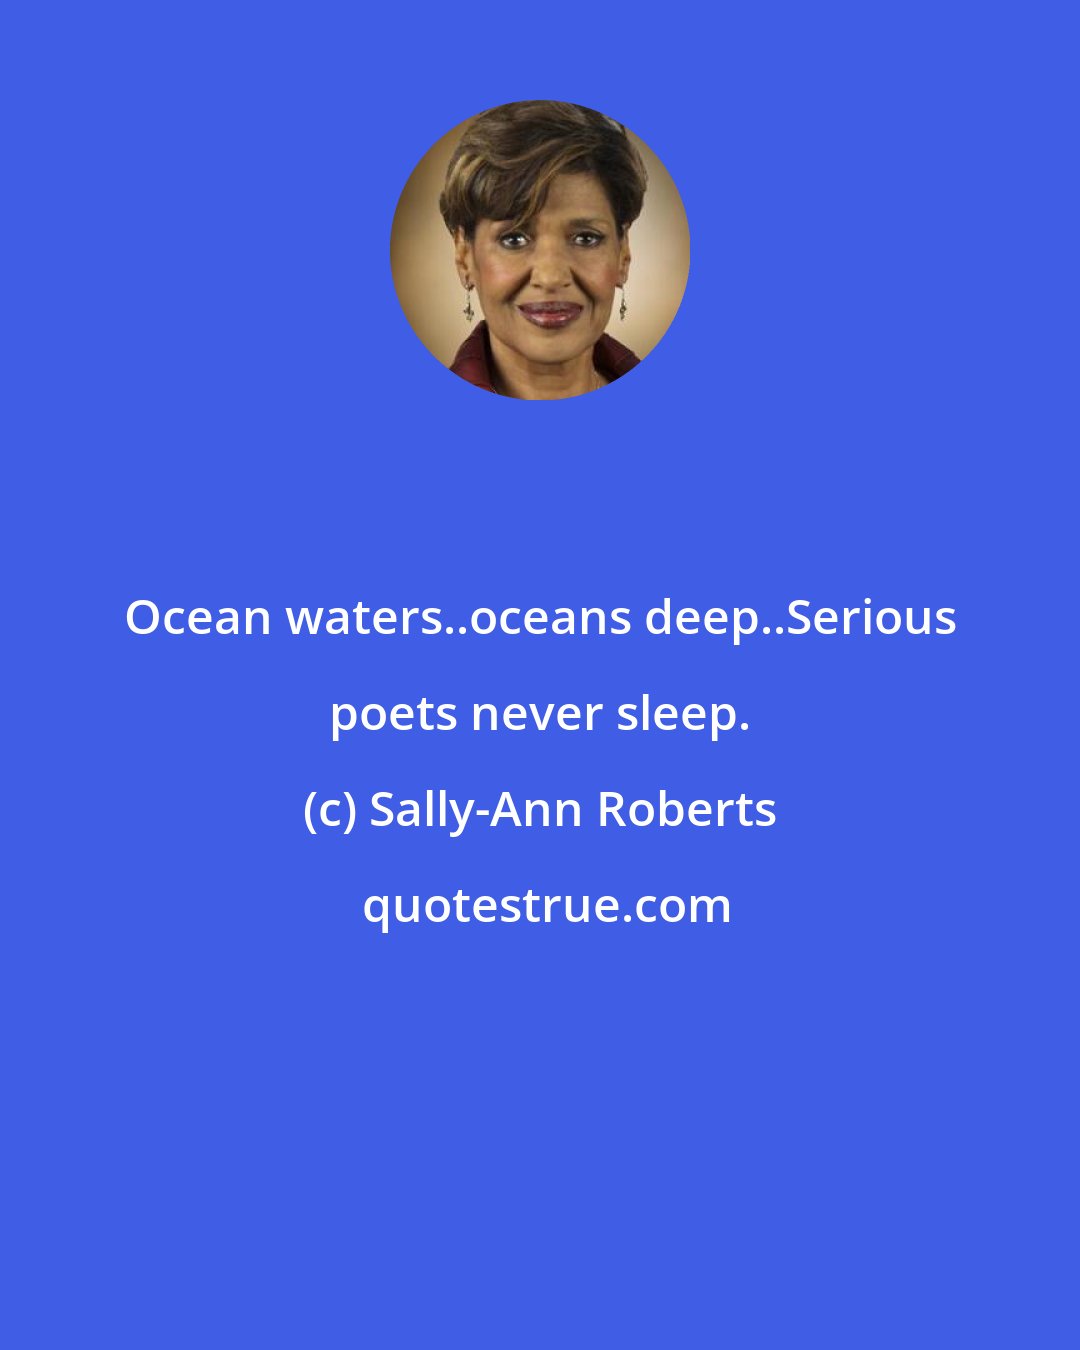 Sally-Ann Roberts: Ocean waters..oceans deep..Serious poets never sleep.